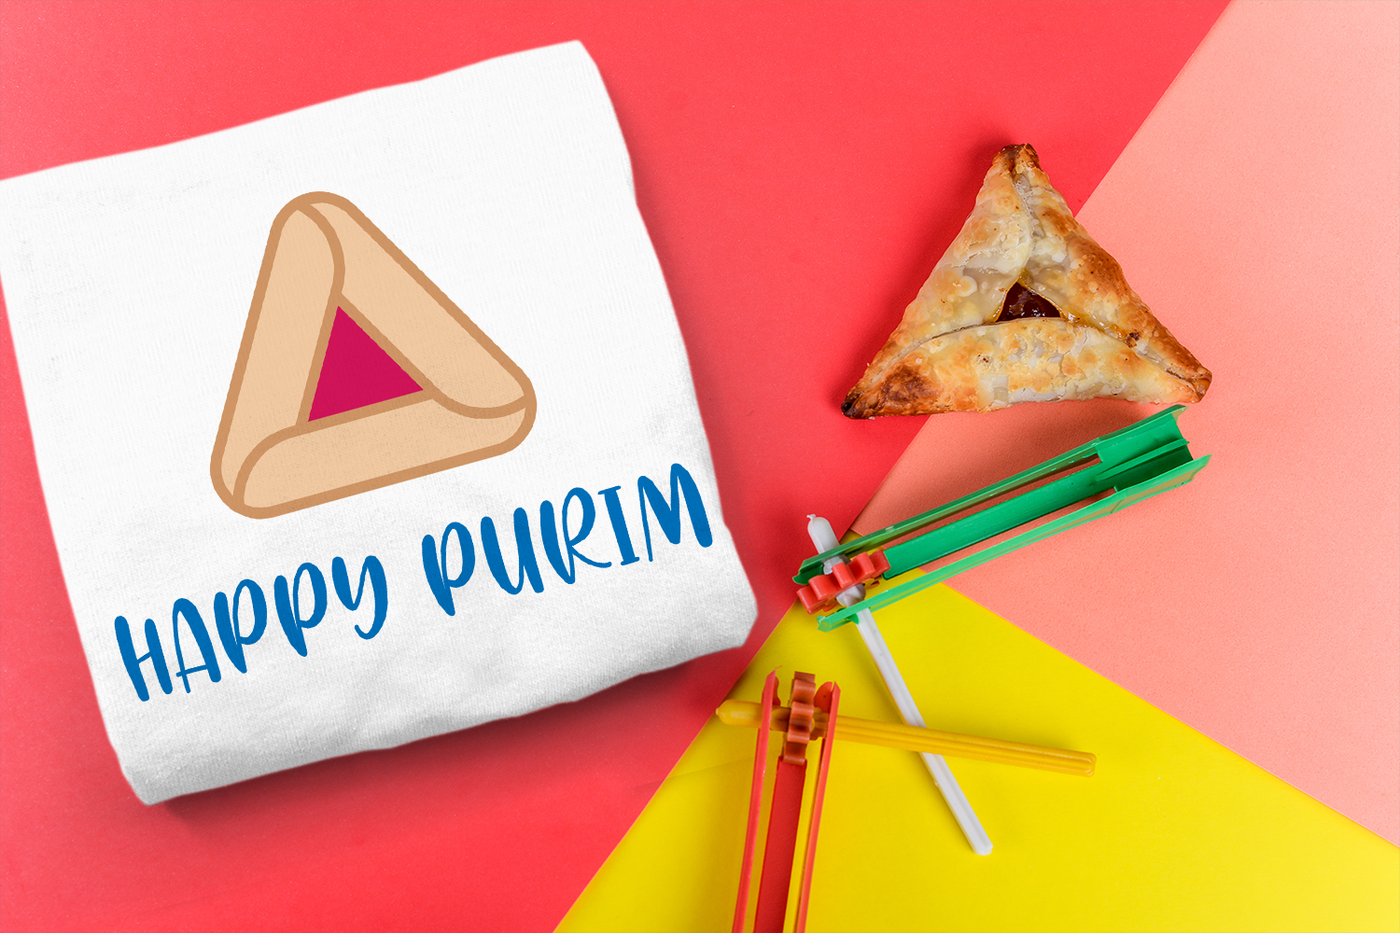 Happy Purim SVG Design with a hamantaschen cookie